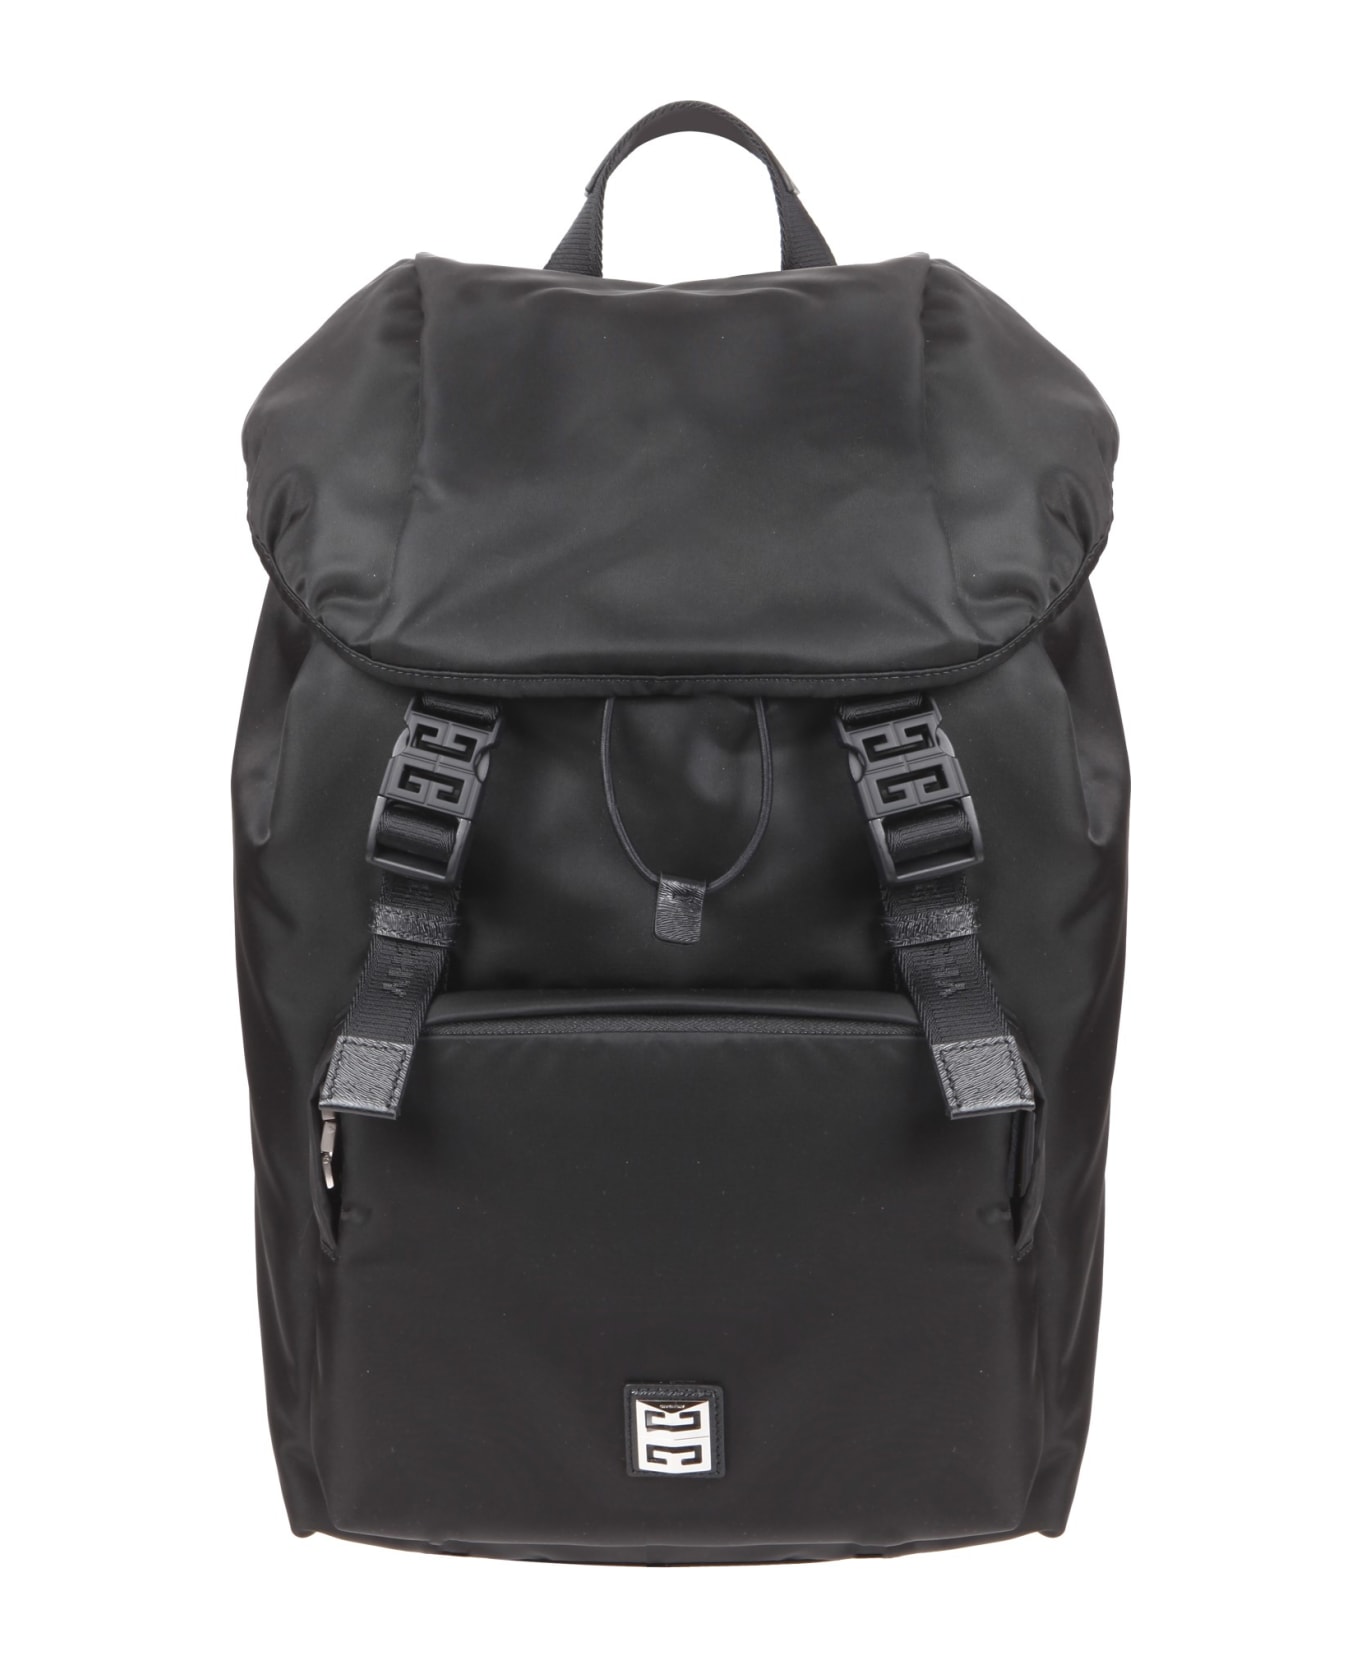 Givenchy 4g Light Backpack - Black